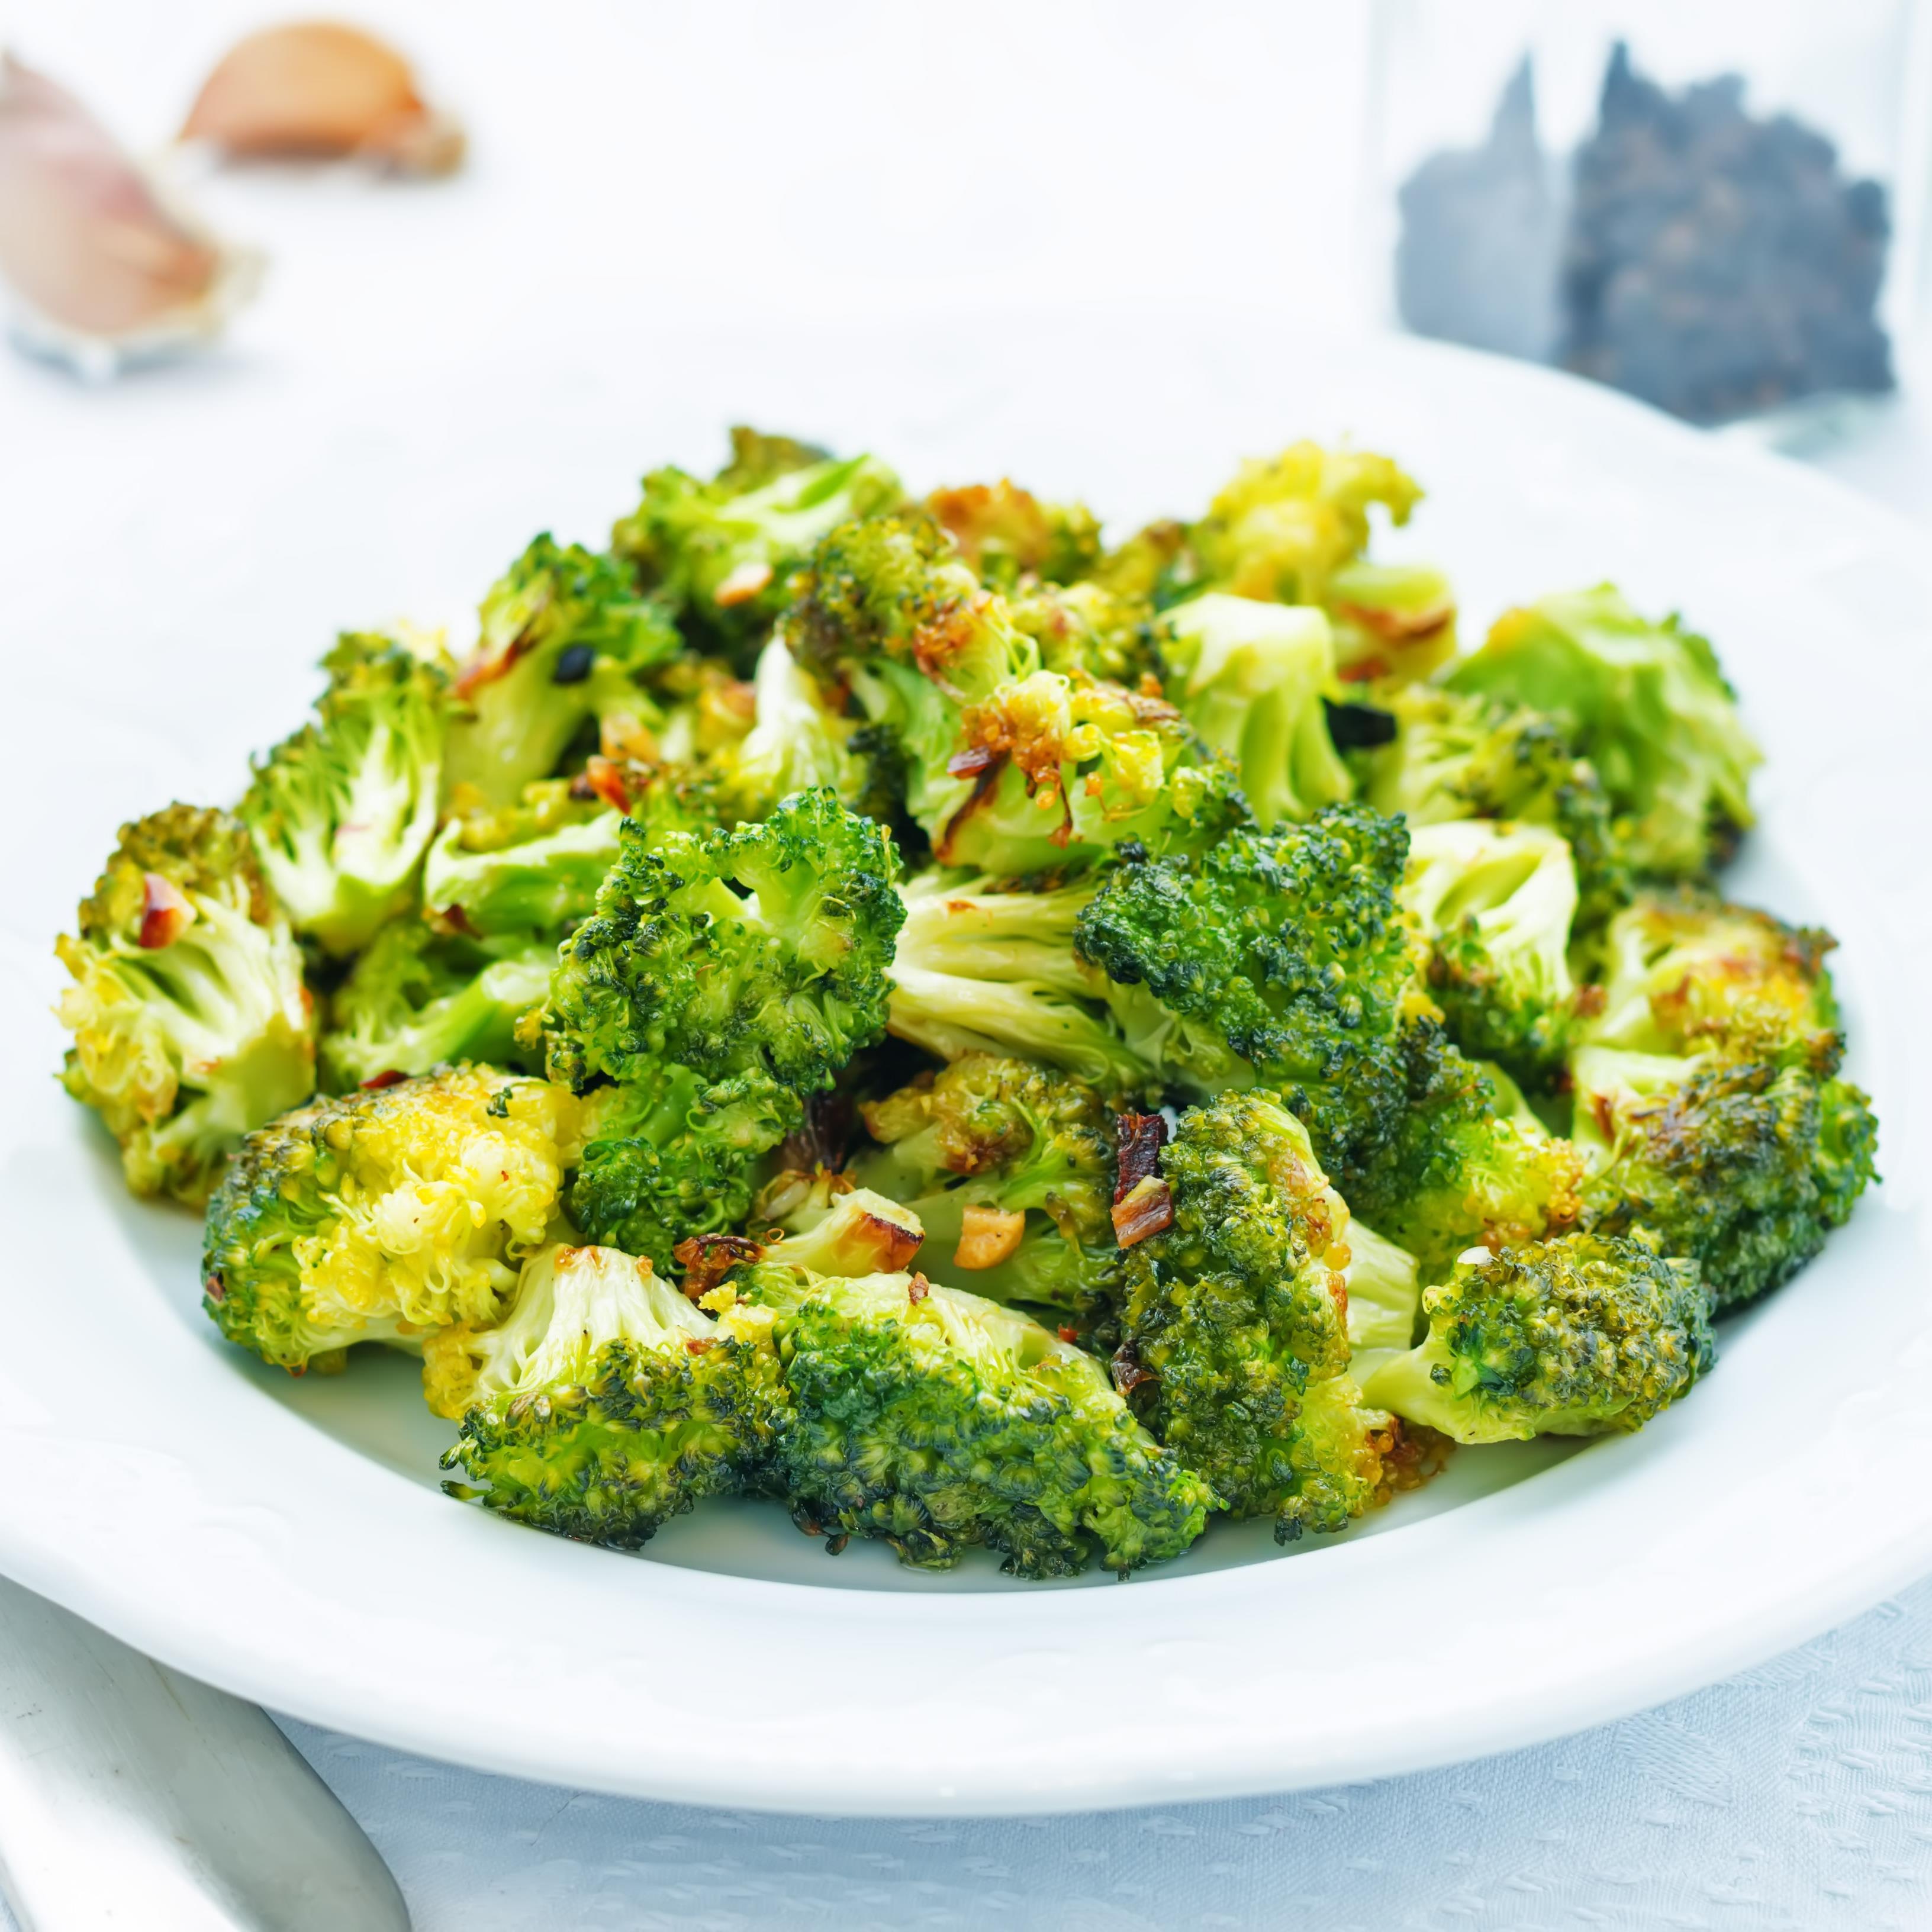 Le brocoli : bienfaits santé, apports nutritionnels, idées recettes et  conseils de cuisson - Doctissimo